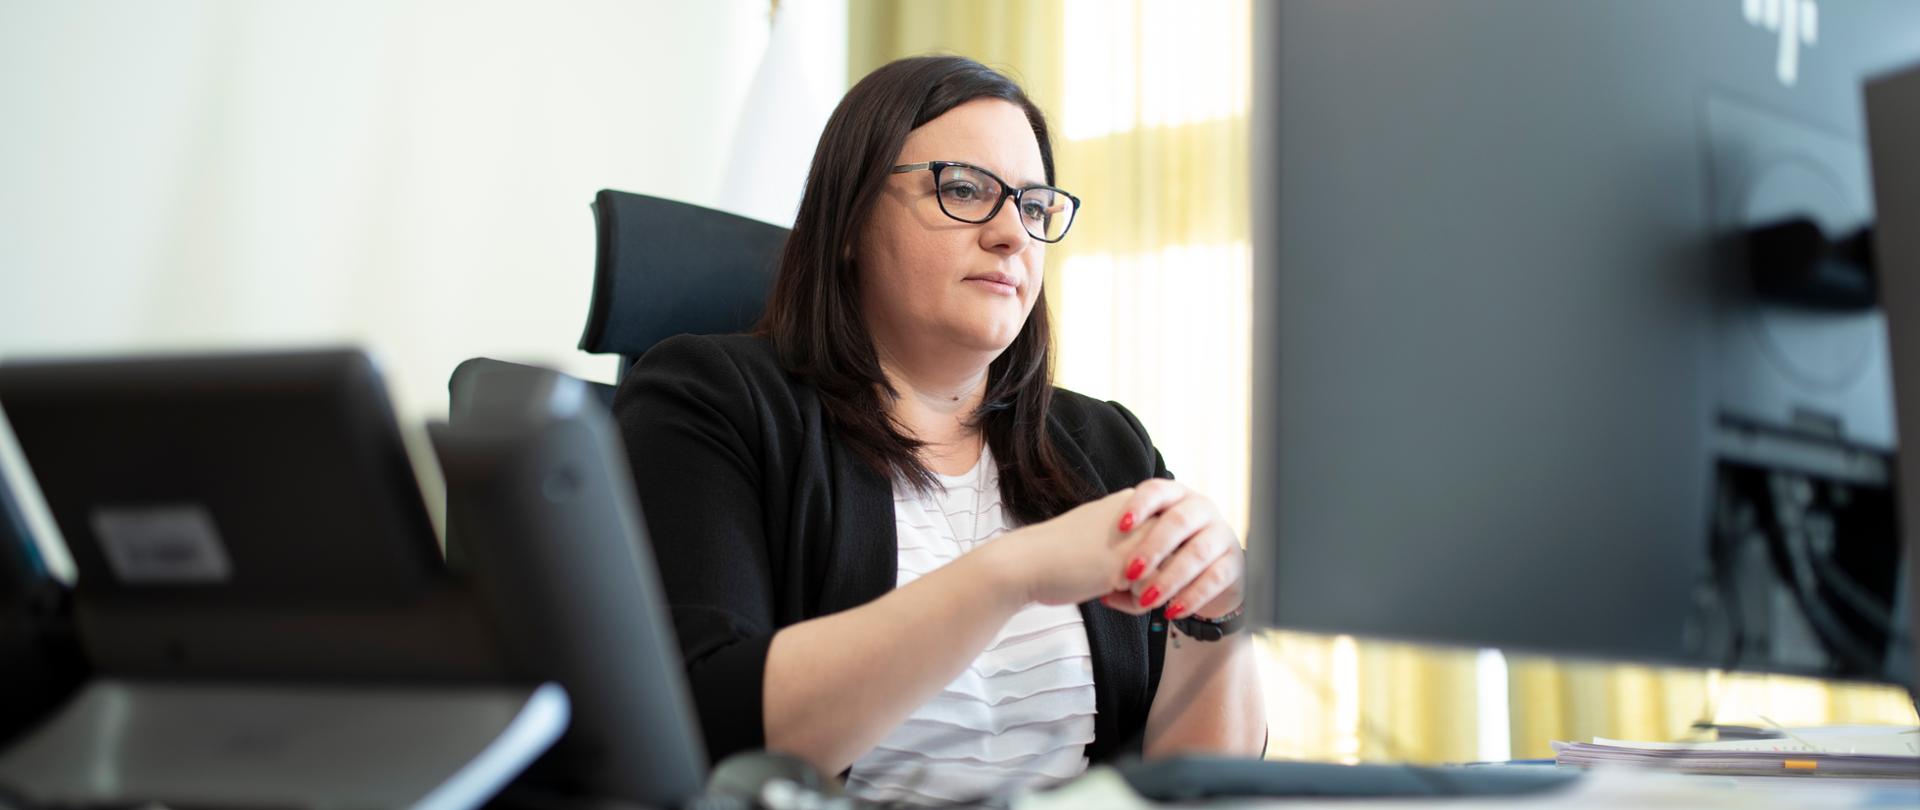 Na zdjęciu wiceminister Małgorzata Jarosińska-Jedynak siedzi przy biurku przed monitorem komputera